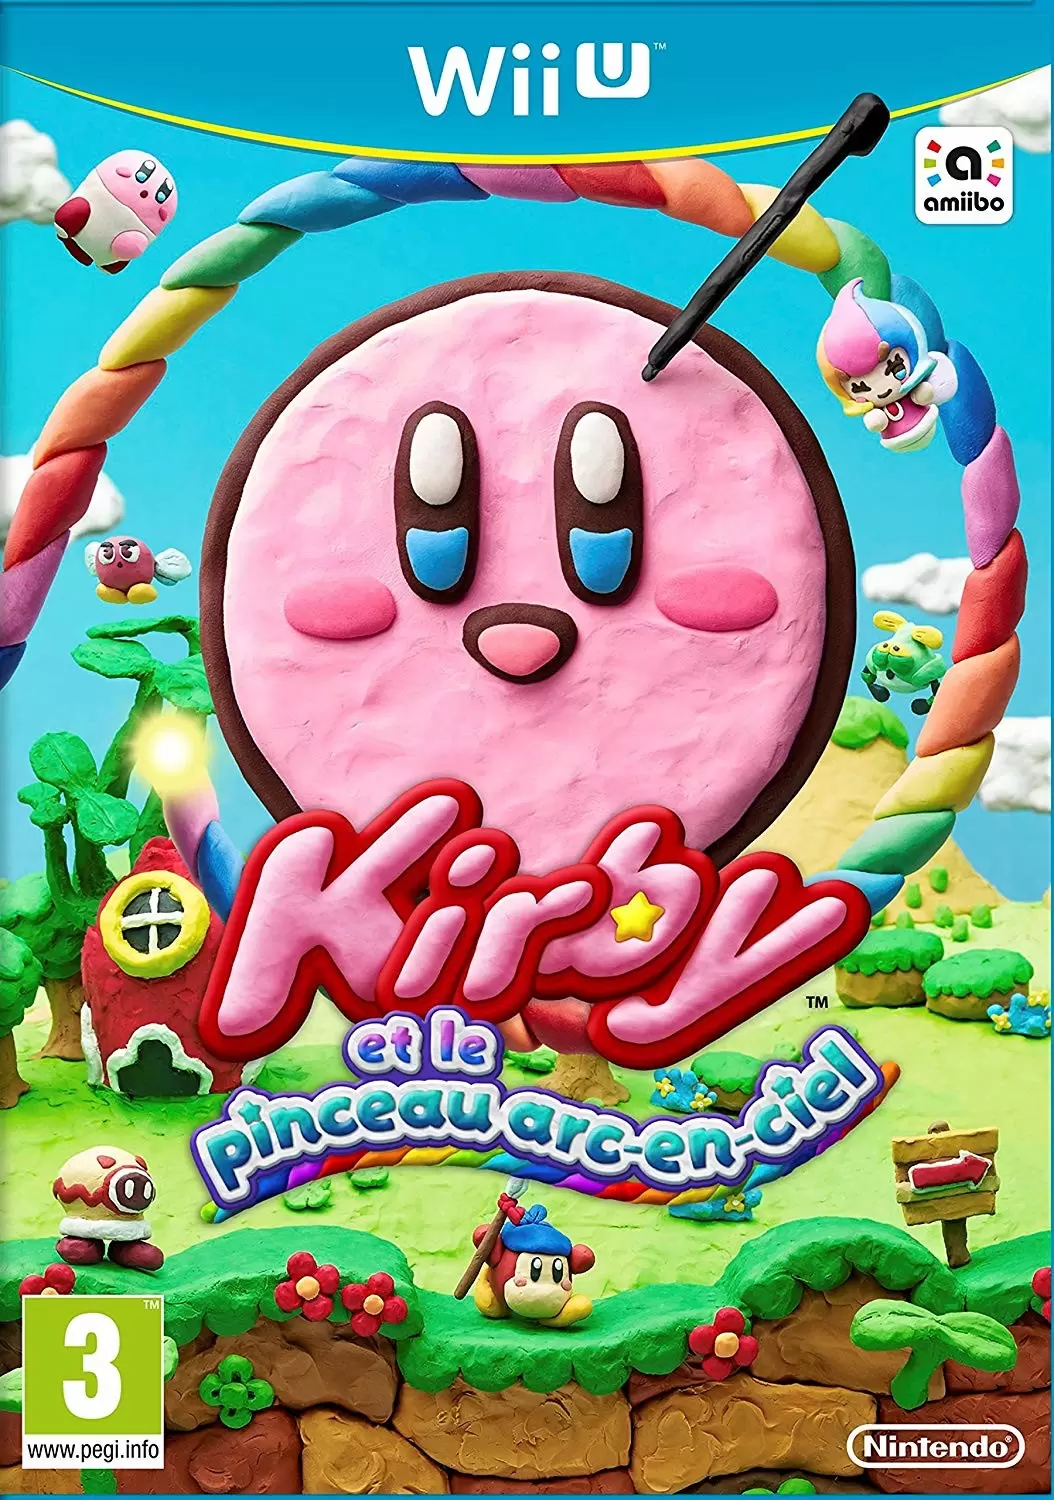 Wii U Games - Kirby et le pinceau arc-en-ciel